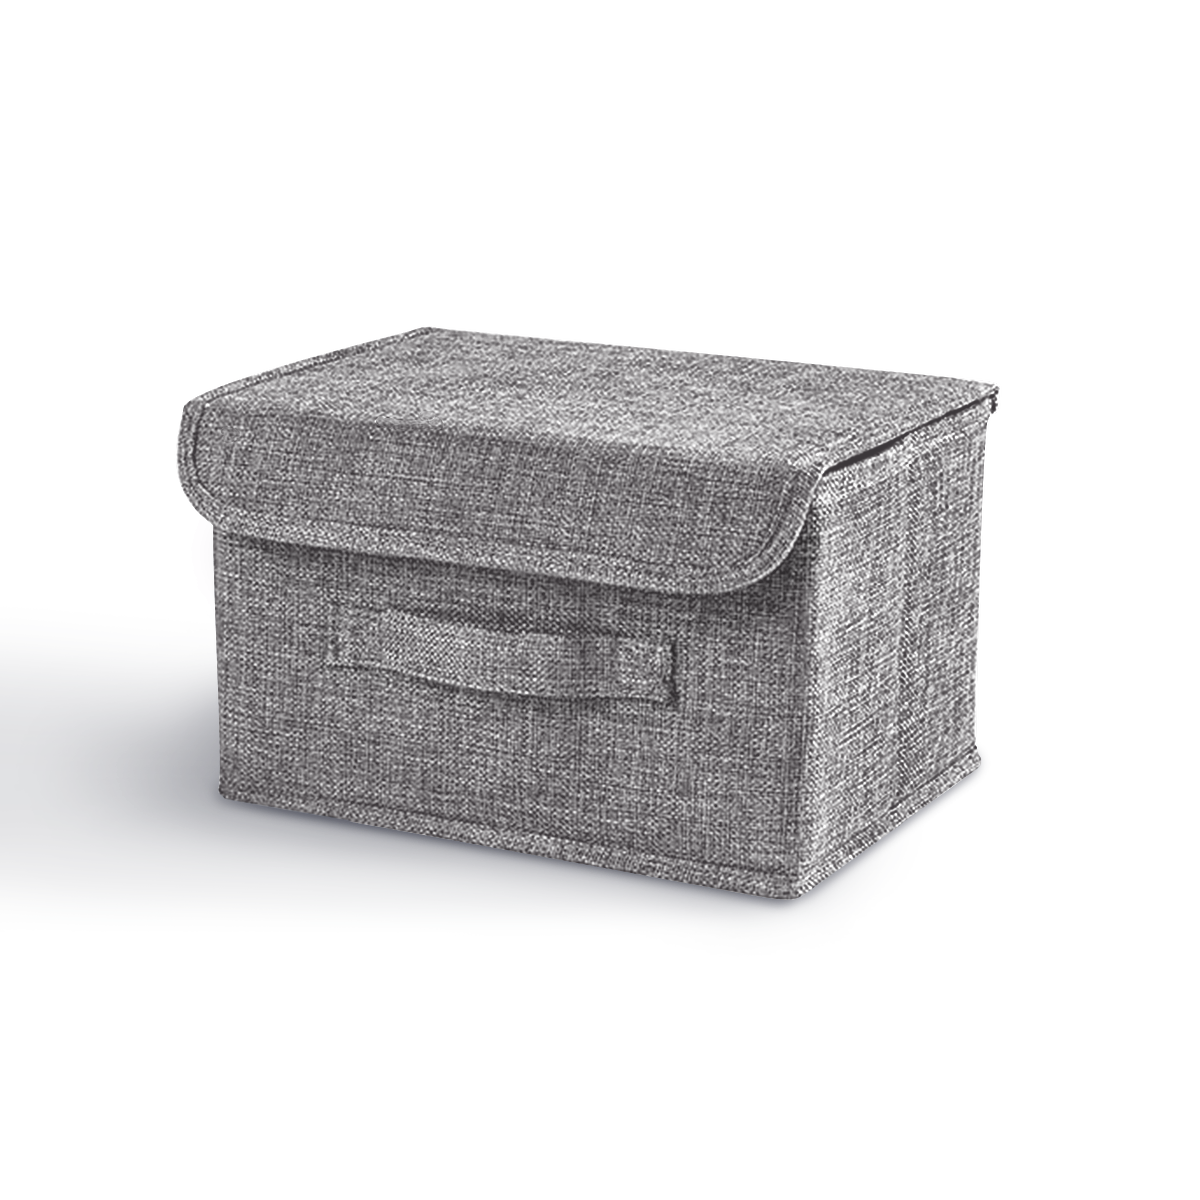 Ящик для хранения с крышкой MVM тканевый серый 170x200x270 TH-07 S GRAY